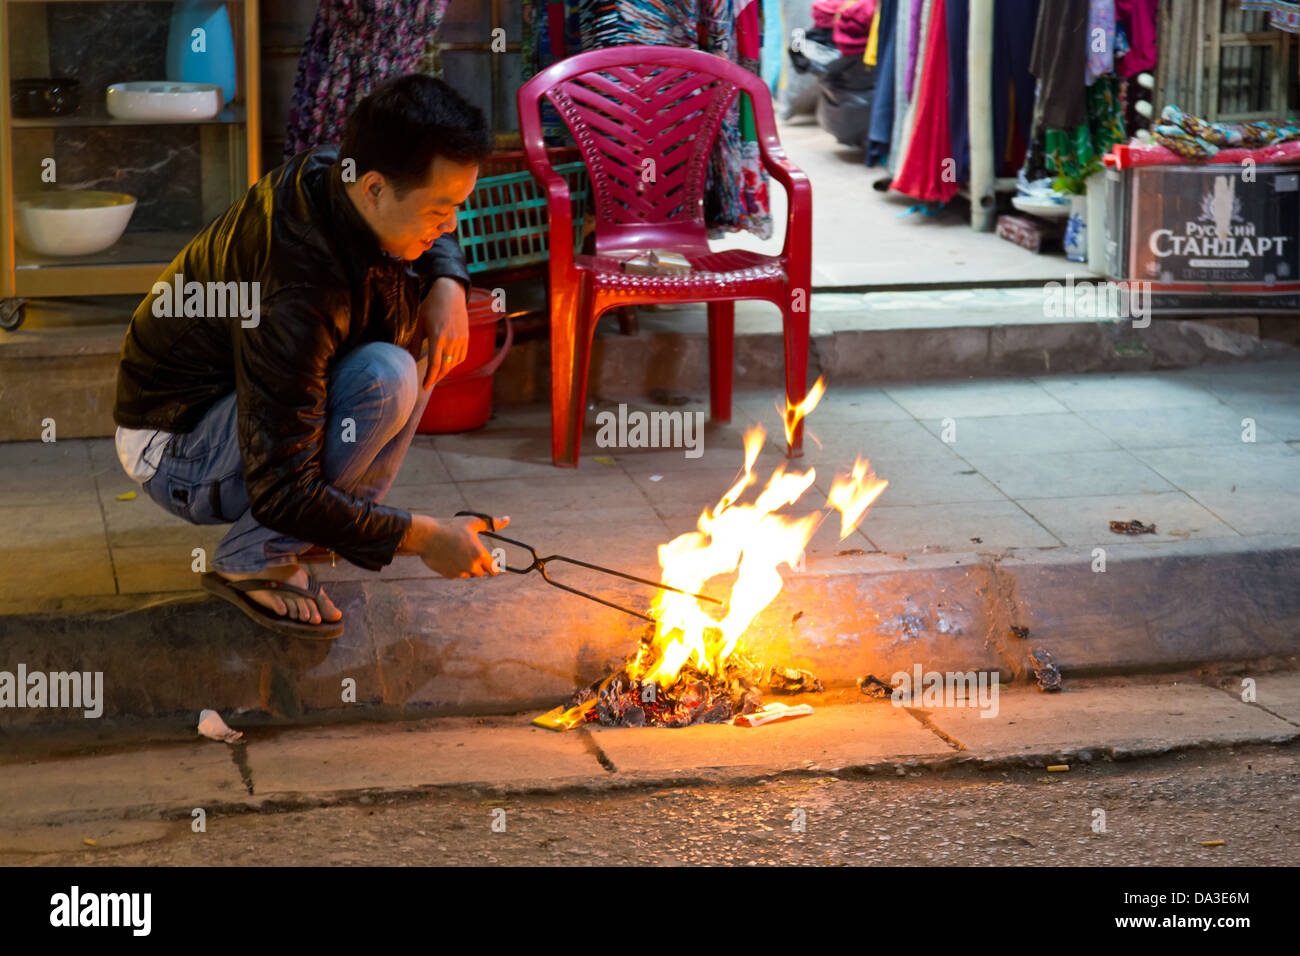 Le feu sur le trottoir dans le vieux quartier de Hanoi, Vietnam Banque D'Images